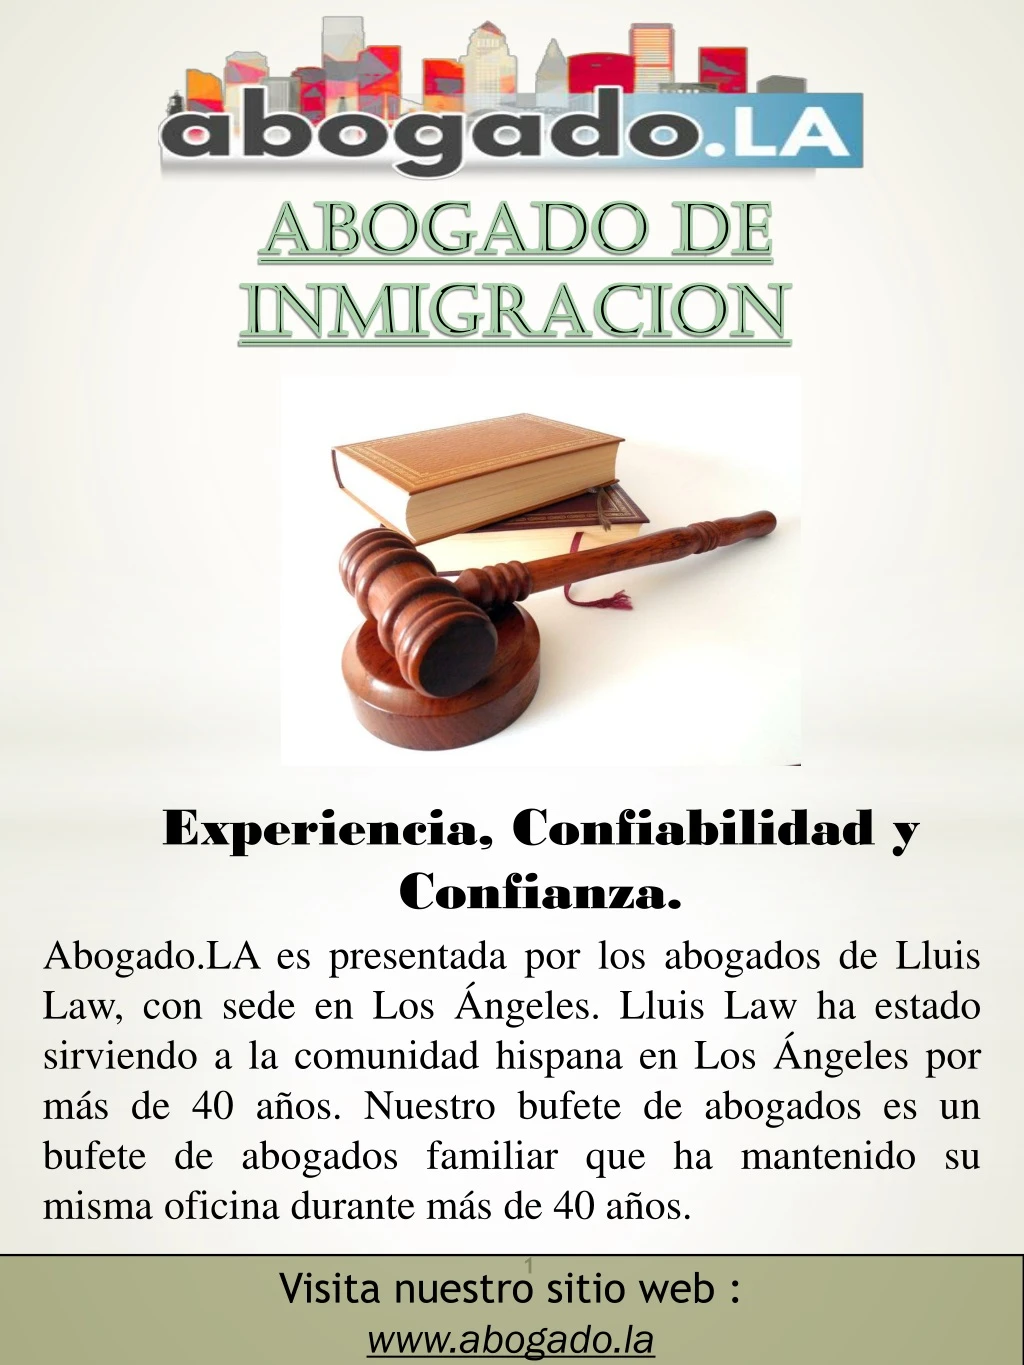 abogado de inmigracion